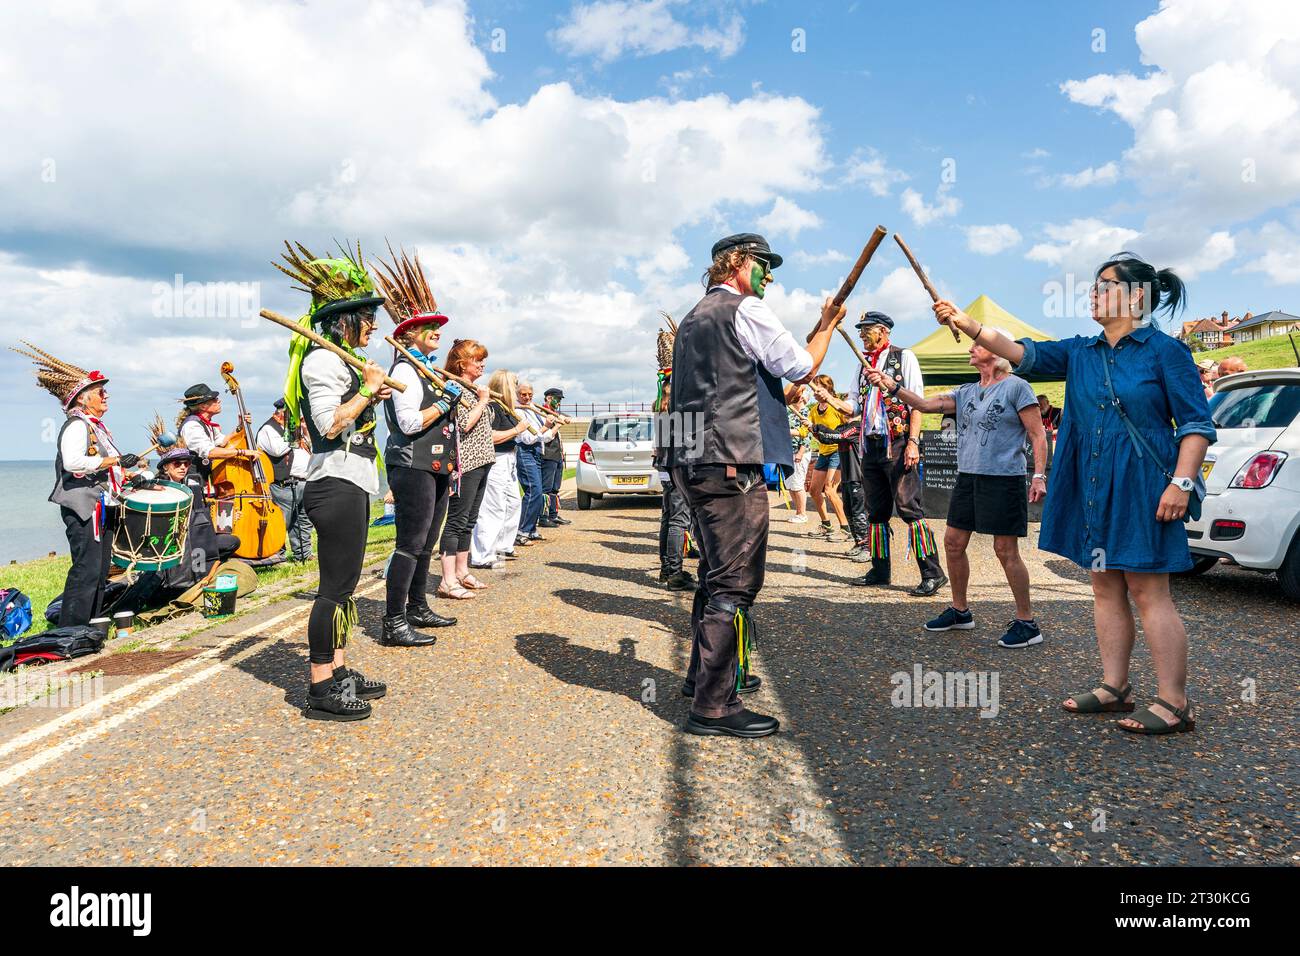 Dead Horse Morrismen tenant des bâtons, dansant avec des membres du public sur le front de mer de Herne Bay pendant l'été. Soleil éclatant et ciel bleu. Banque D'Images